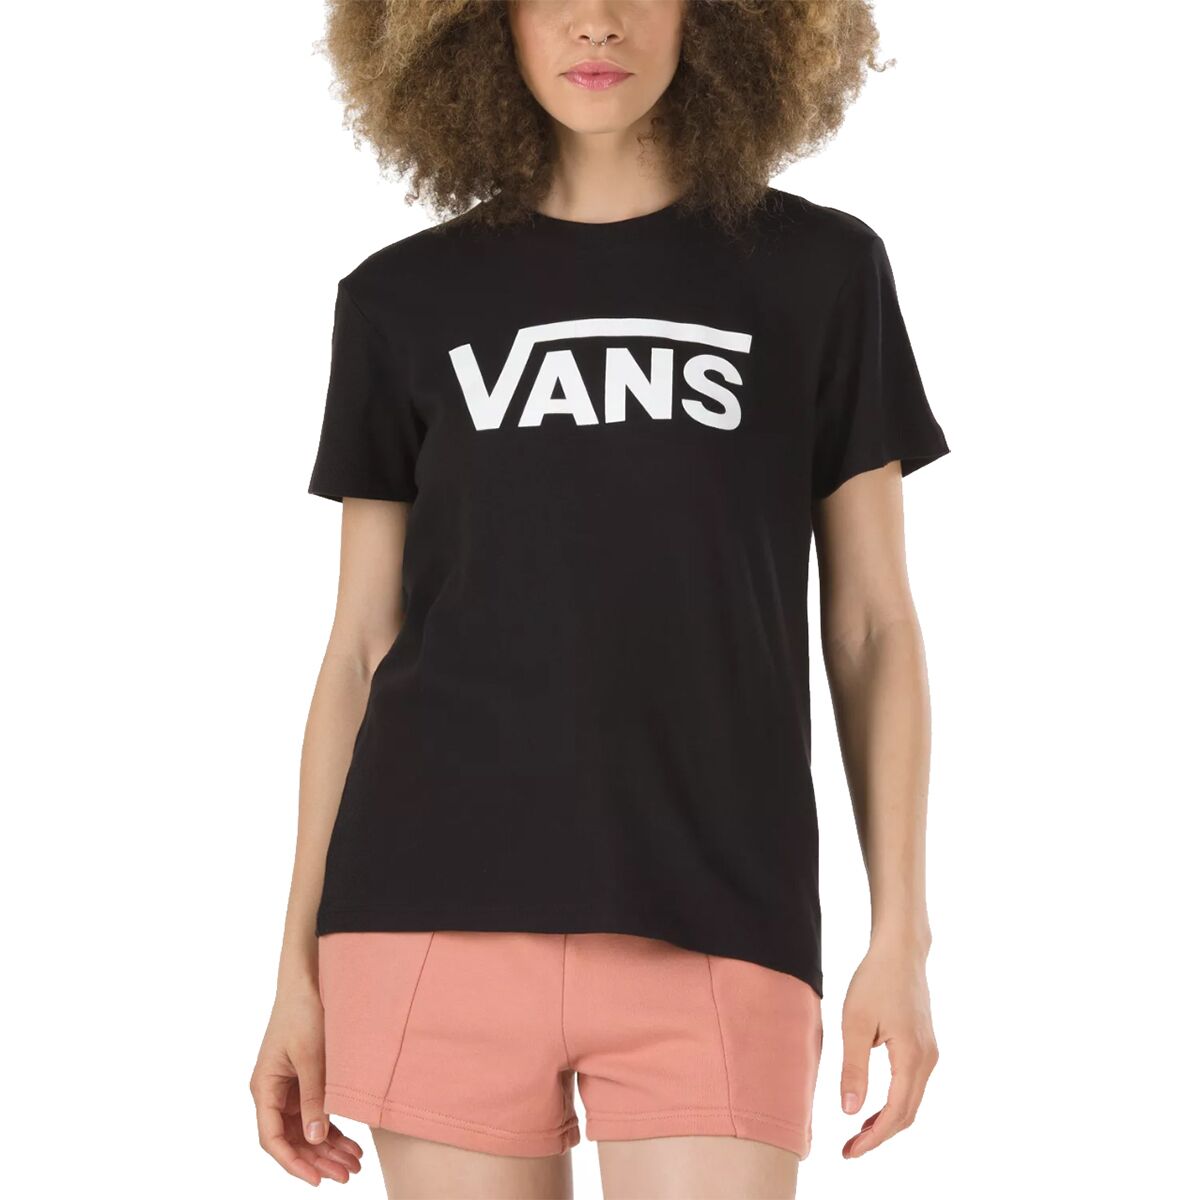 Vans Flying V Crew T-Shirt - Women's